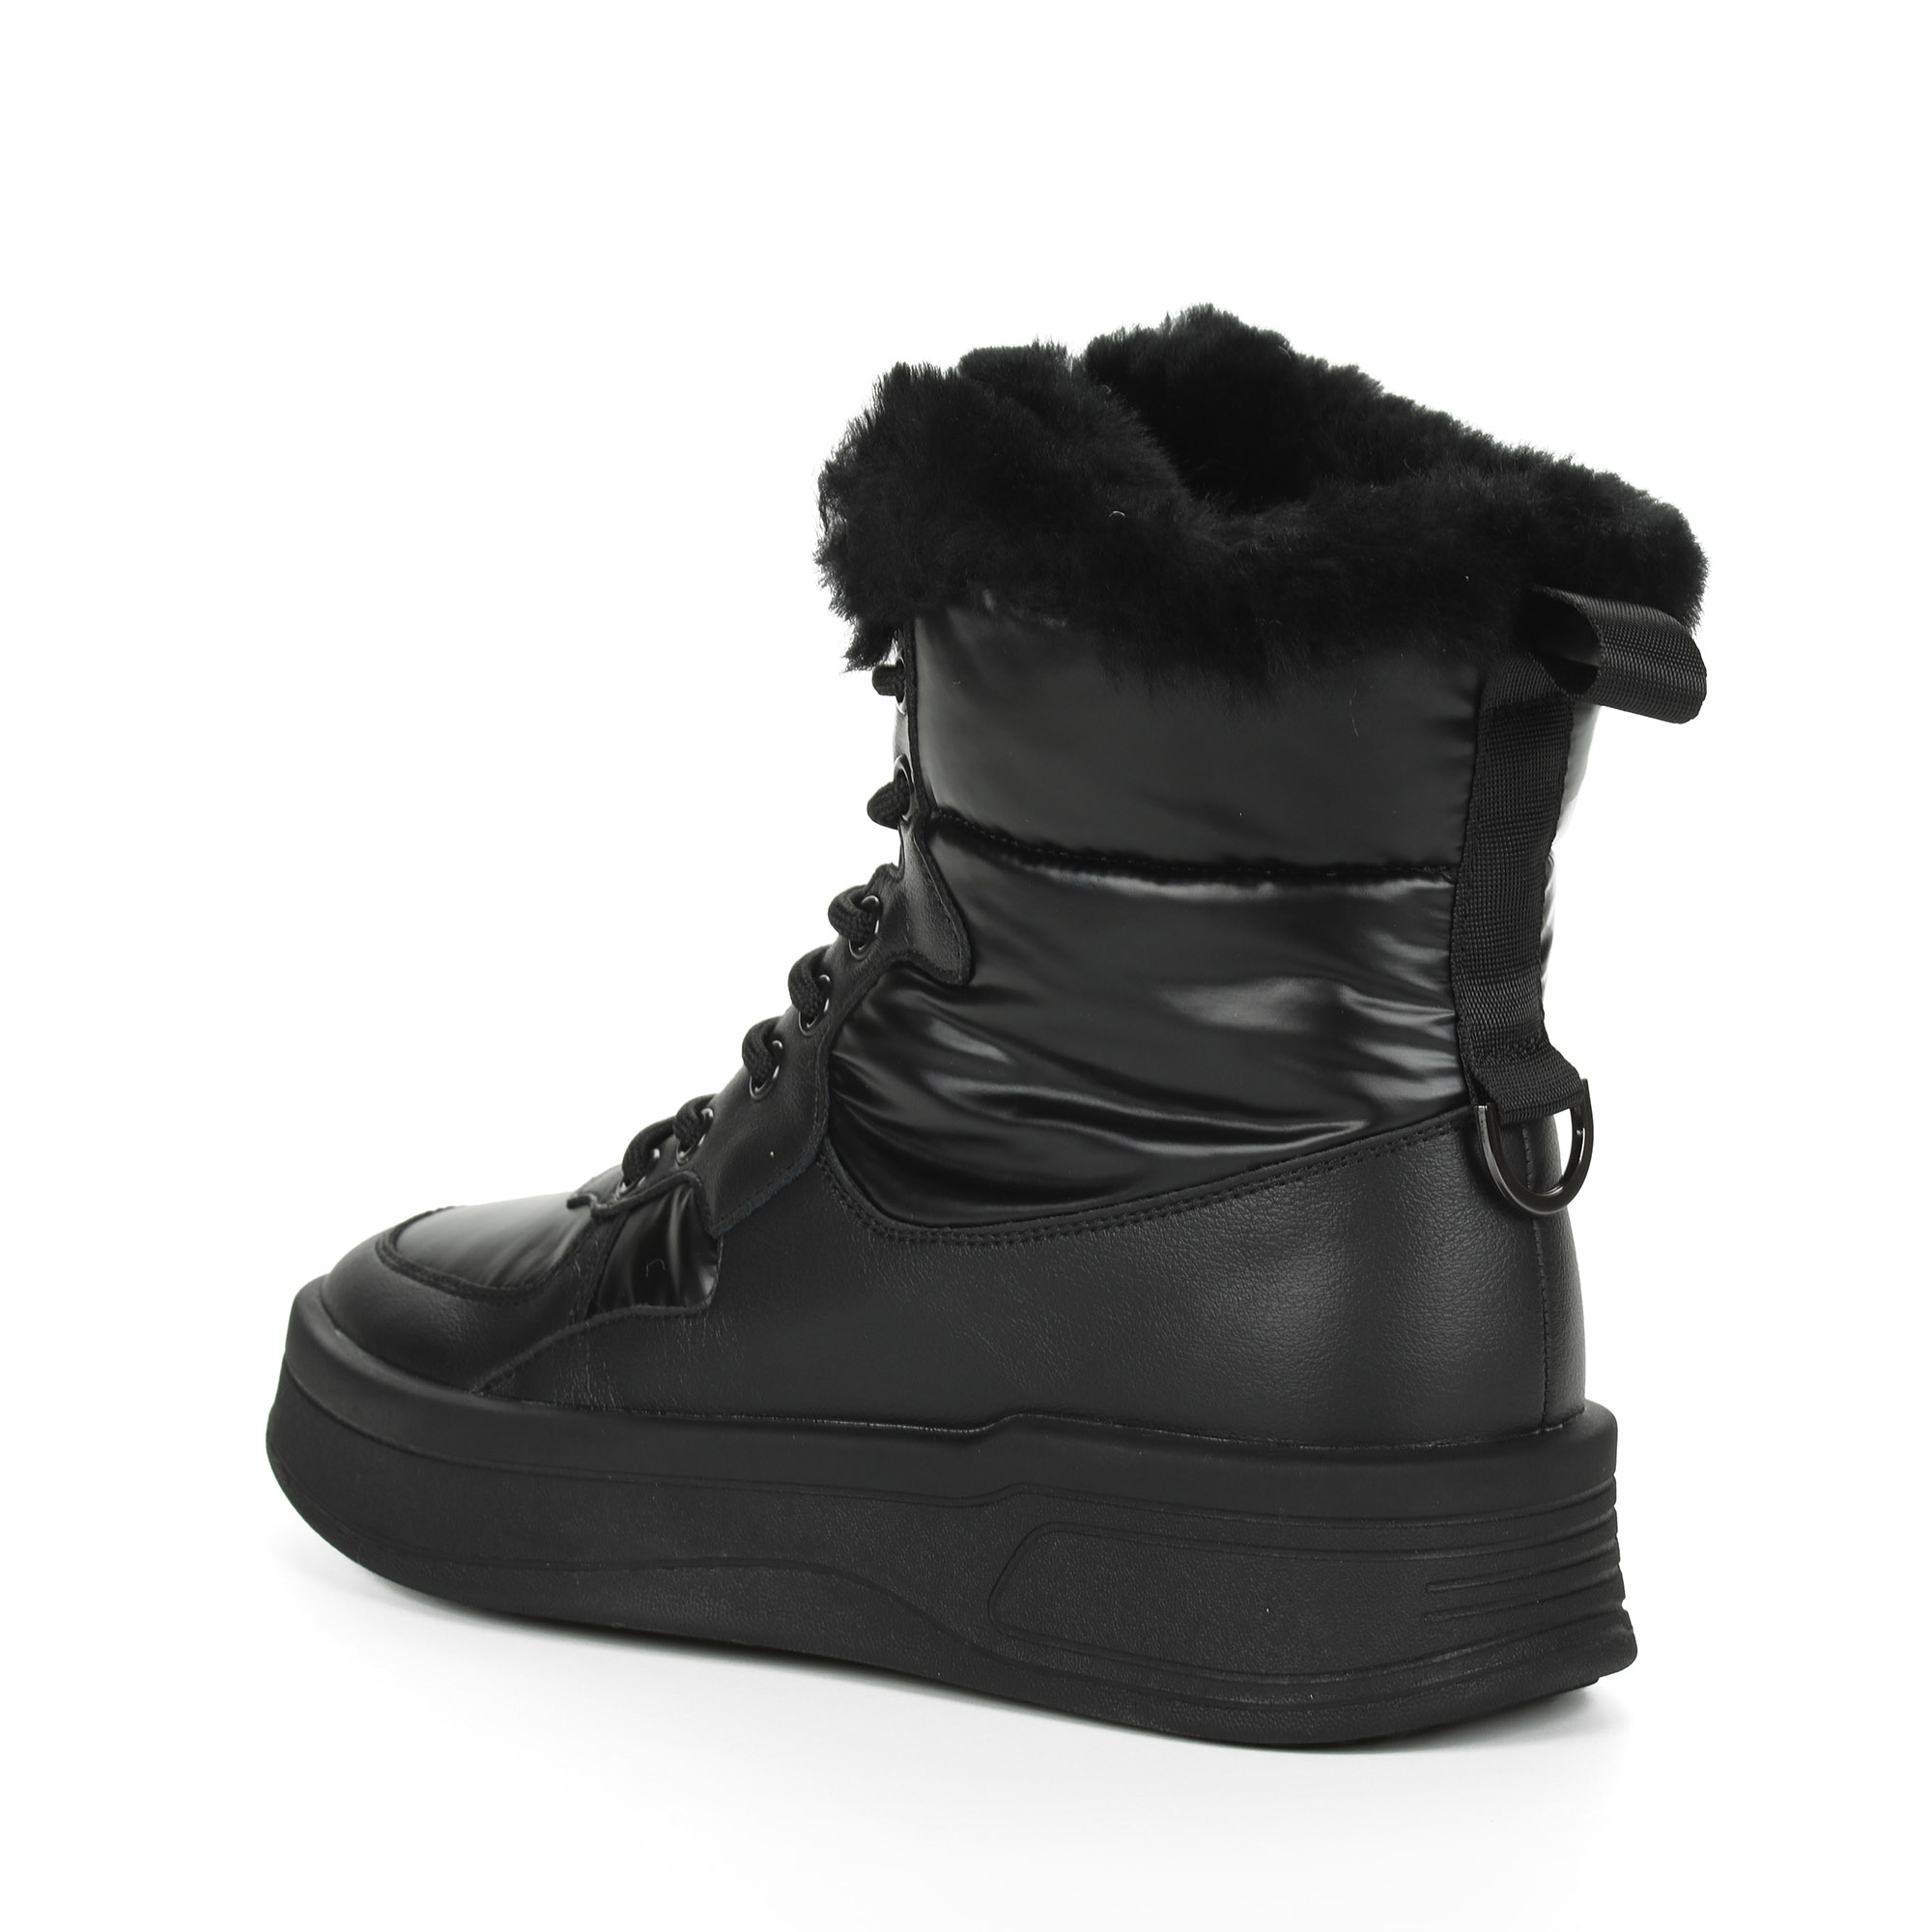 Черные высокие кроссовки из комбинированных материалов смеховой опушкой на подкладке из натуральной шерсти на утолщенной платформе Respect, размер 36, цвет черный - фото 5